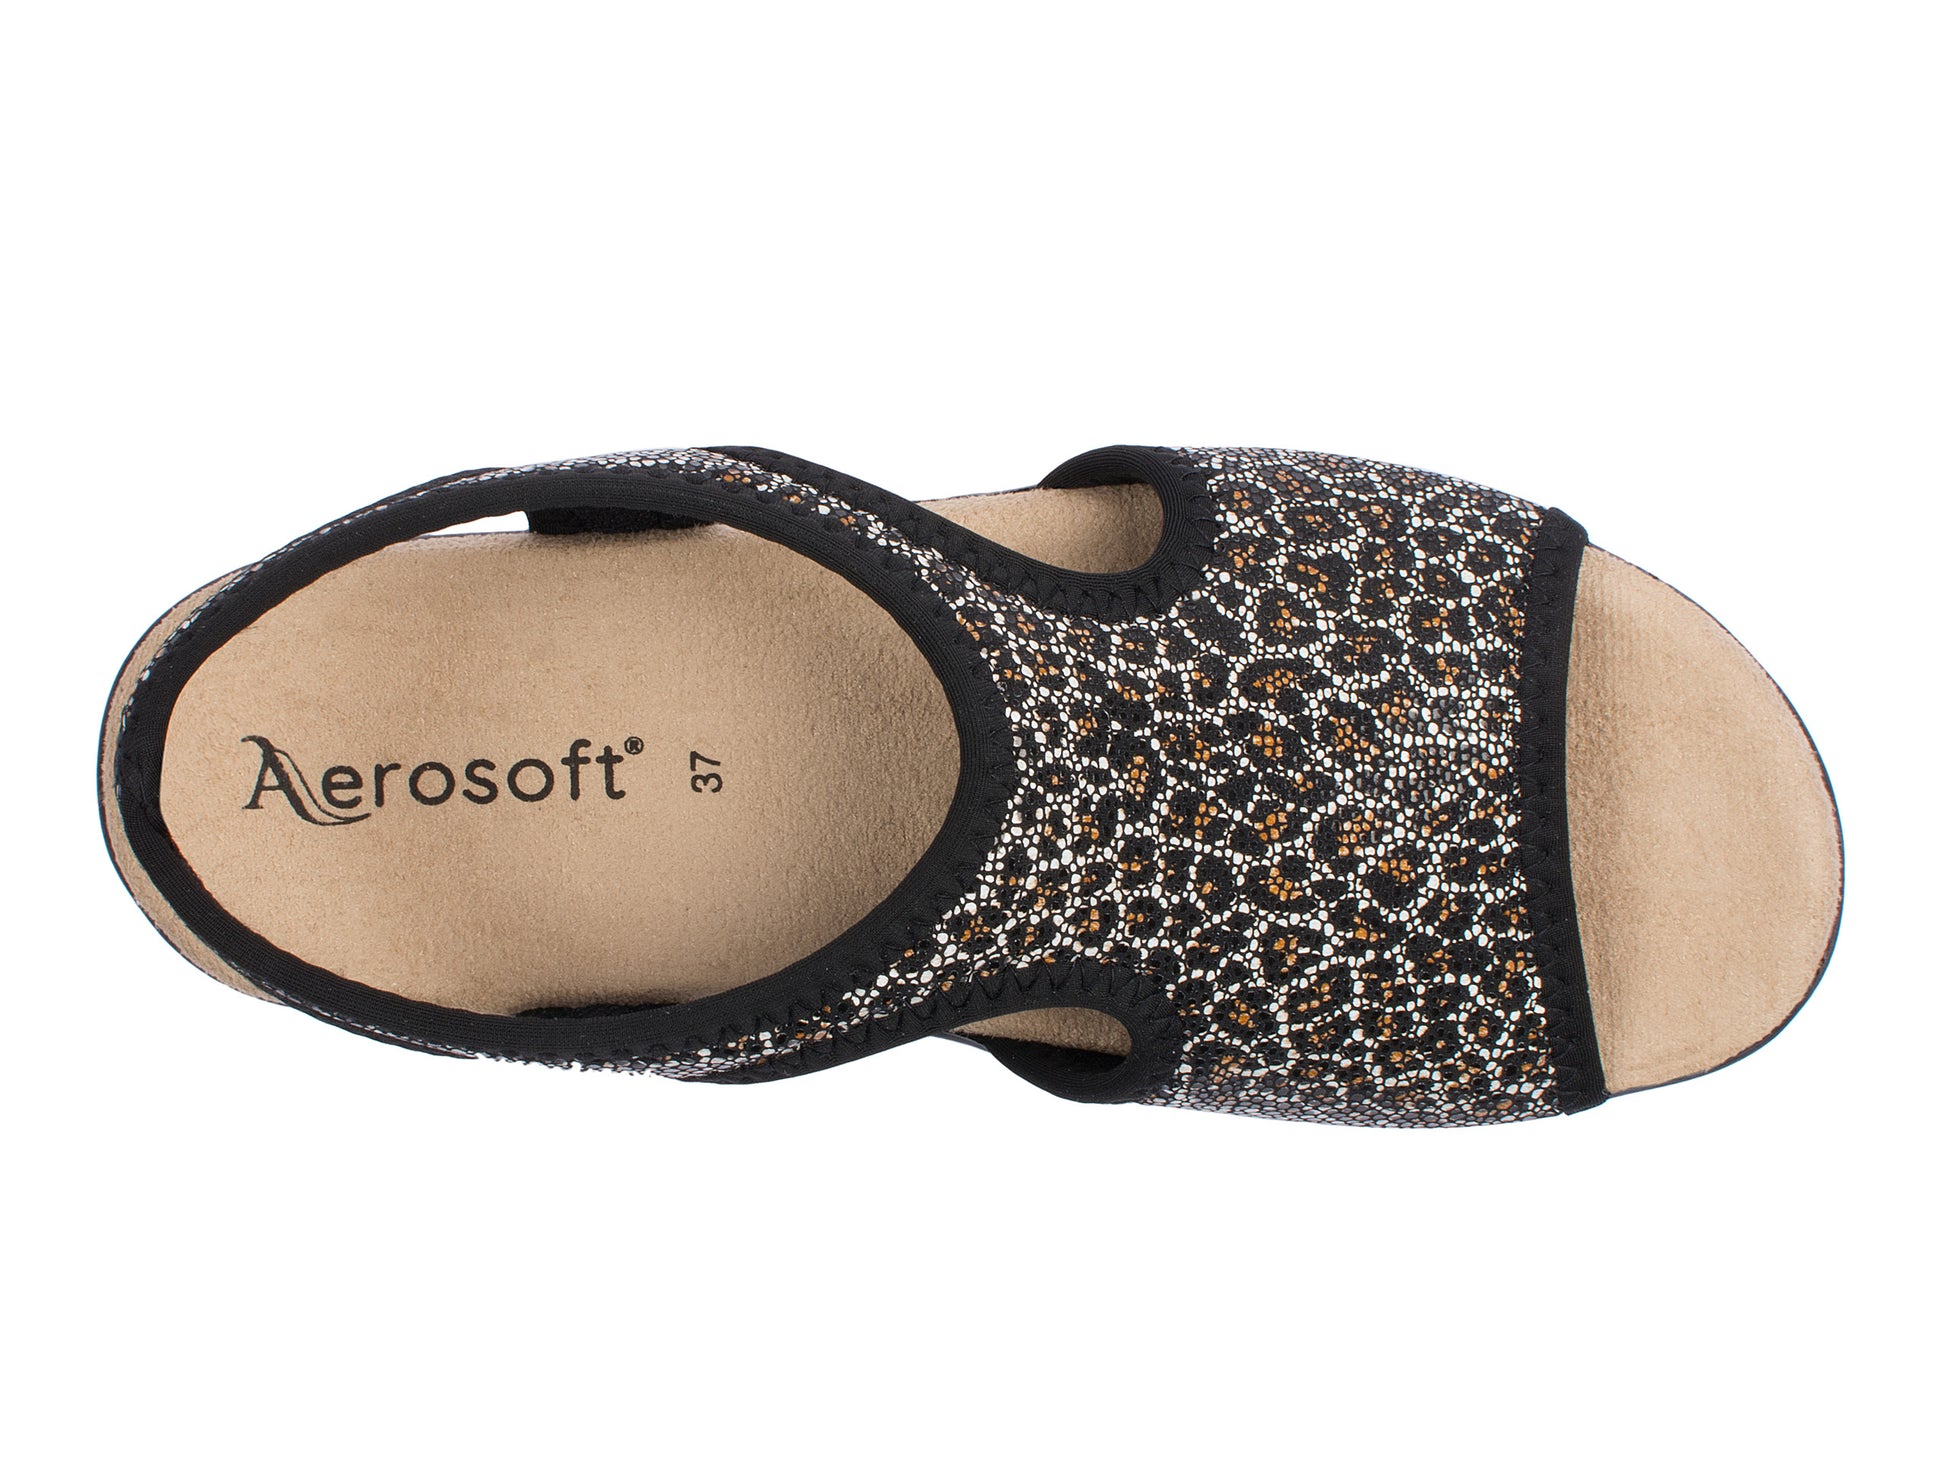 Damen Stretch Sandalette Modell Stretch 05 von Aerosoft in der Farbe Leopard schwarz von oben